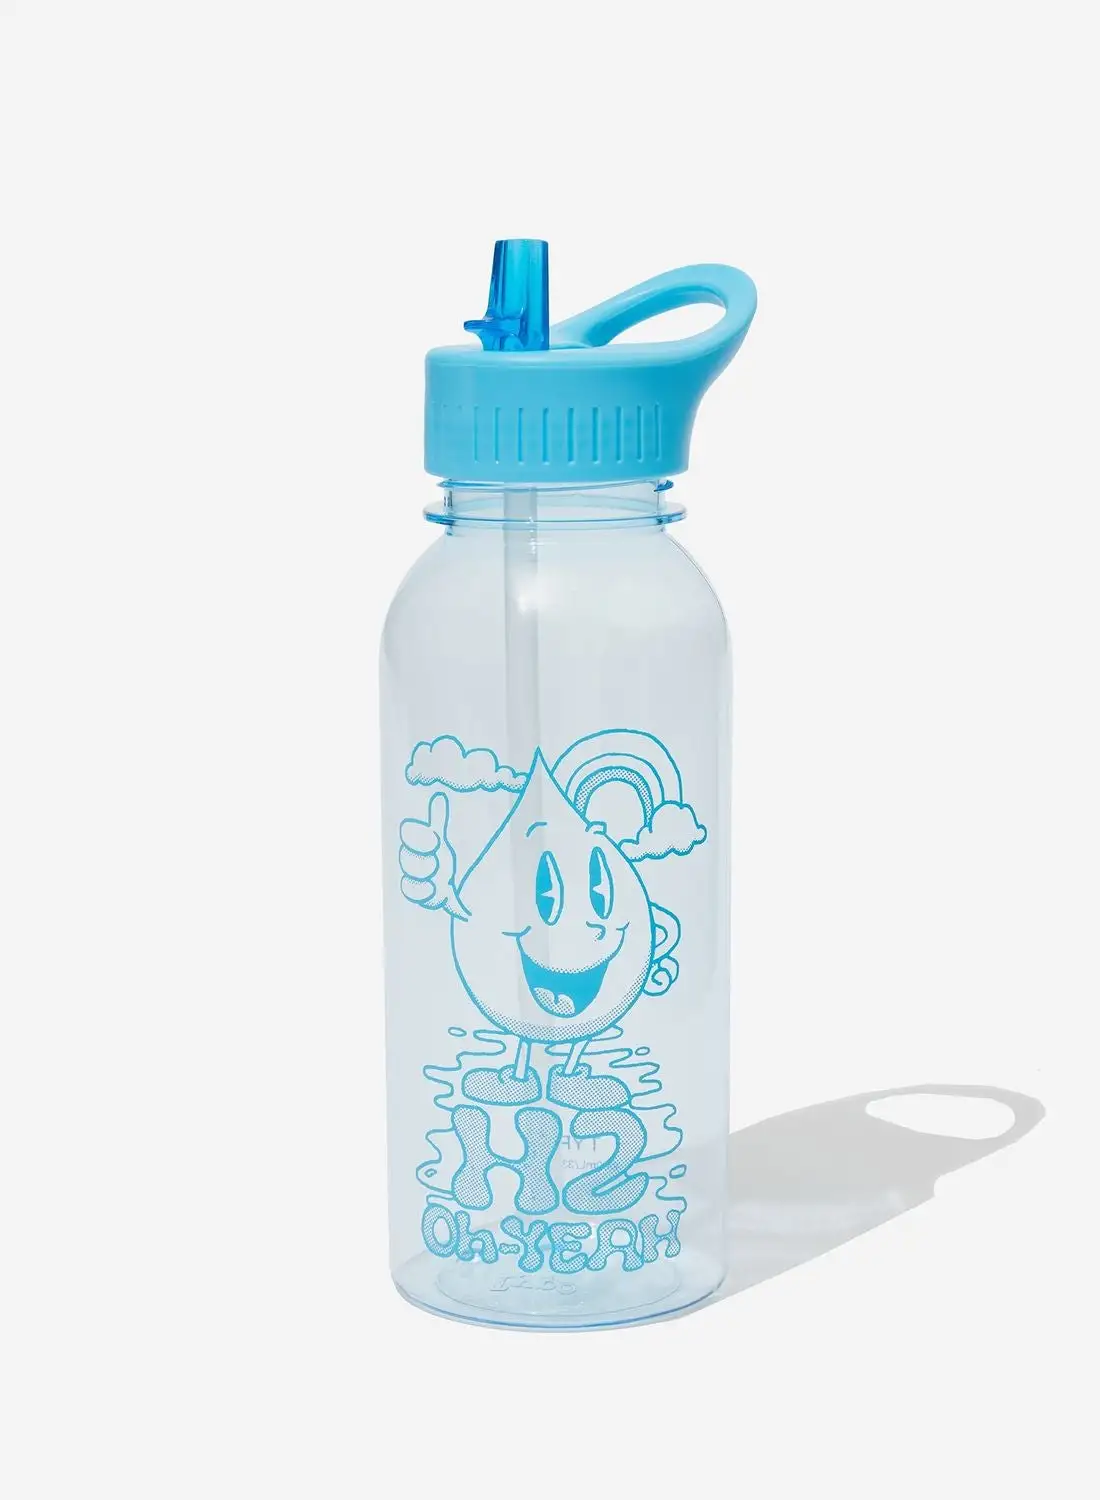 Typo Drink It Up Water Bottle